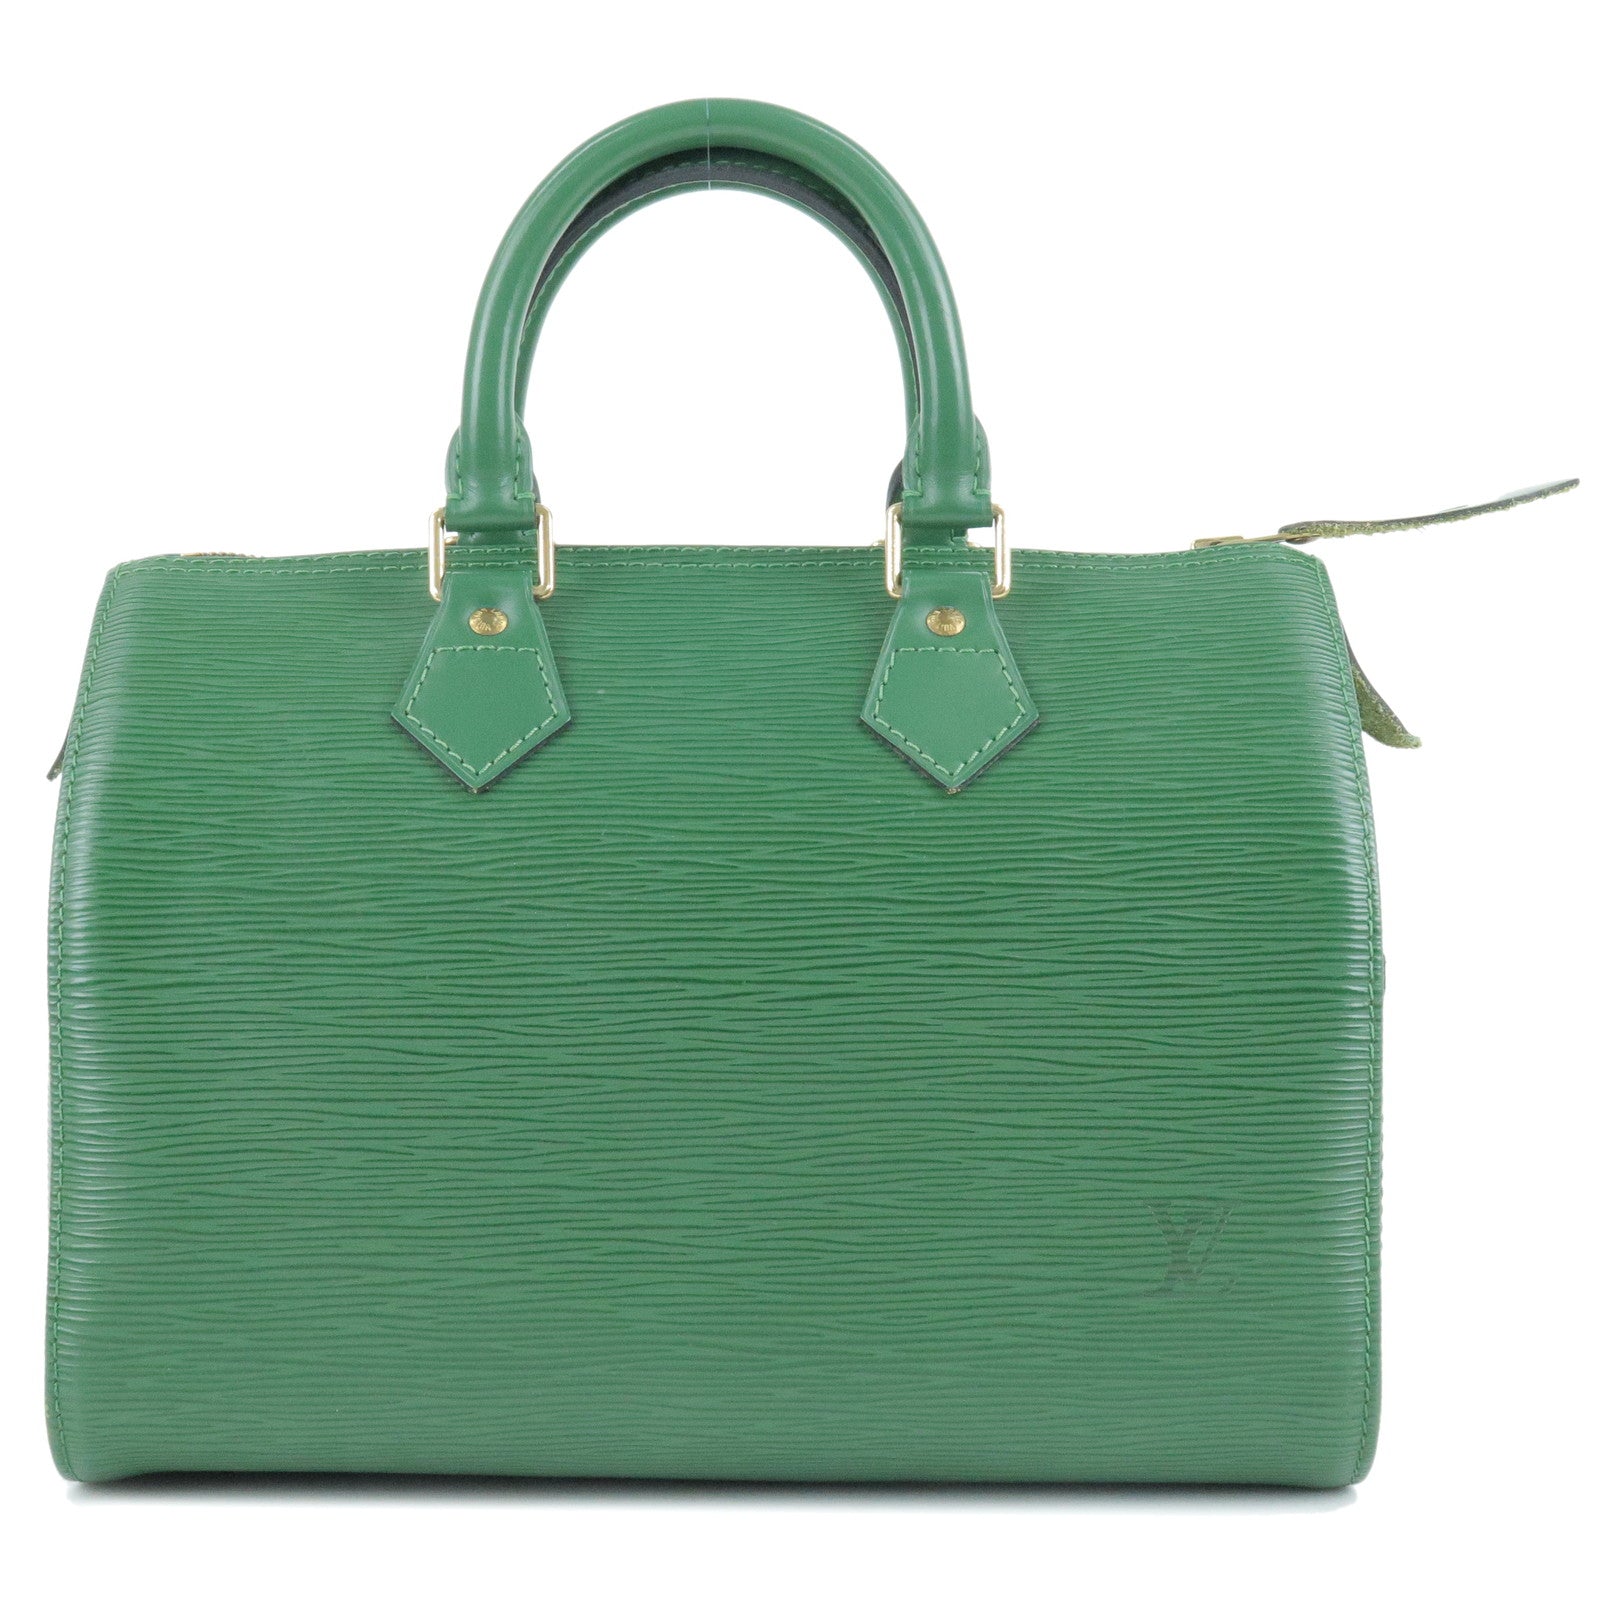 Louis-Vuitton-Epi-Speedy-25-Hand-Boston-Bag-Borneo-Green-M43015